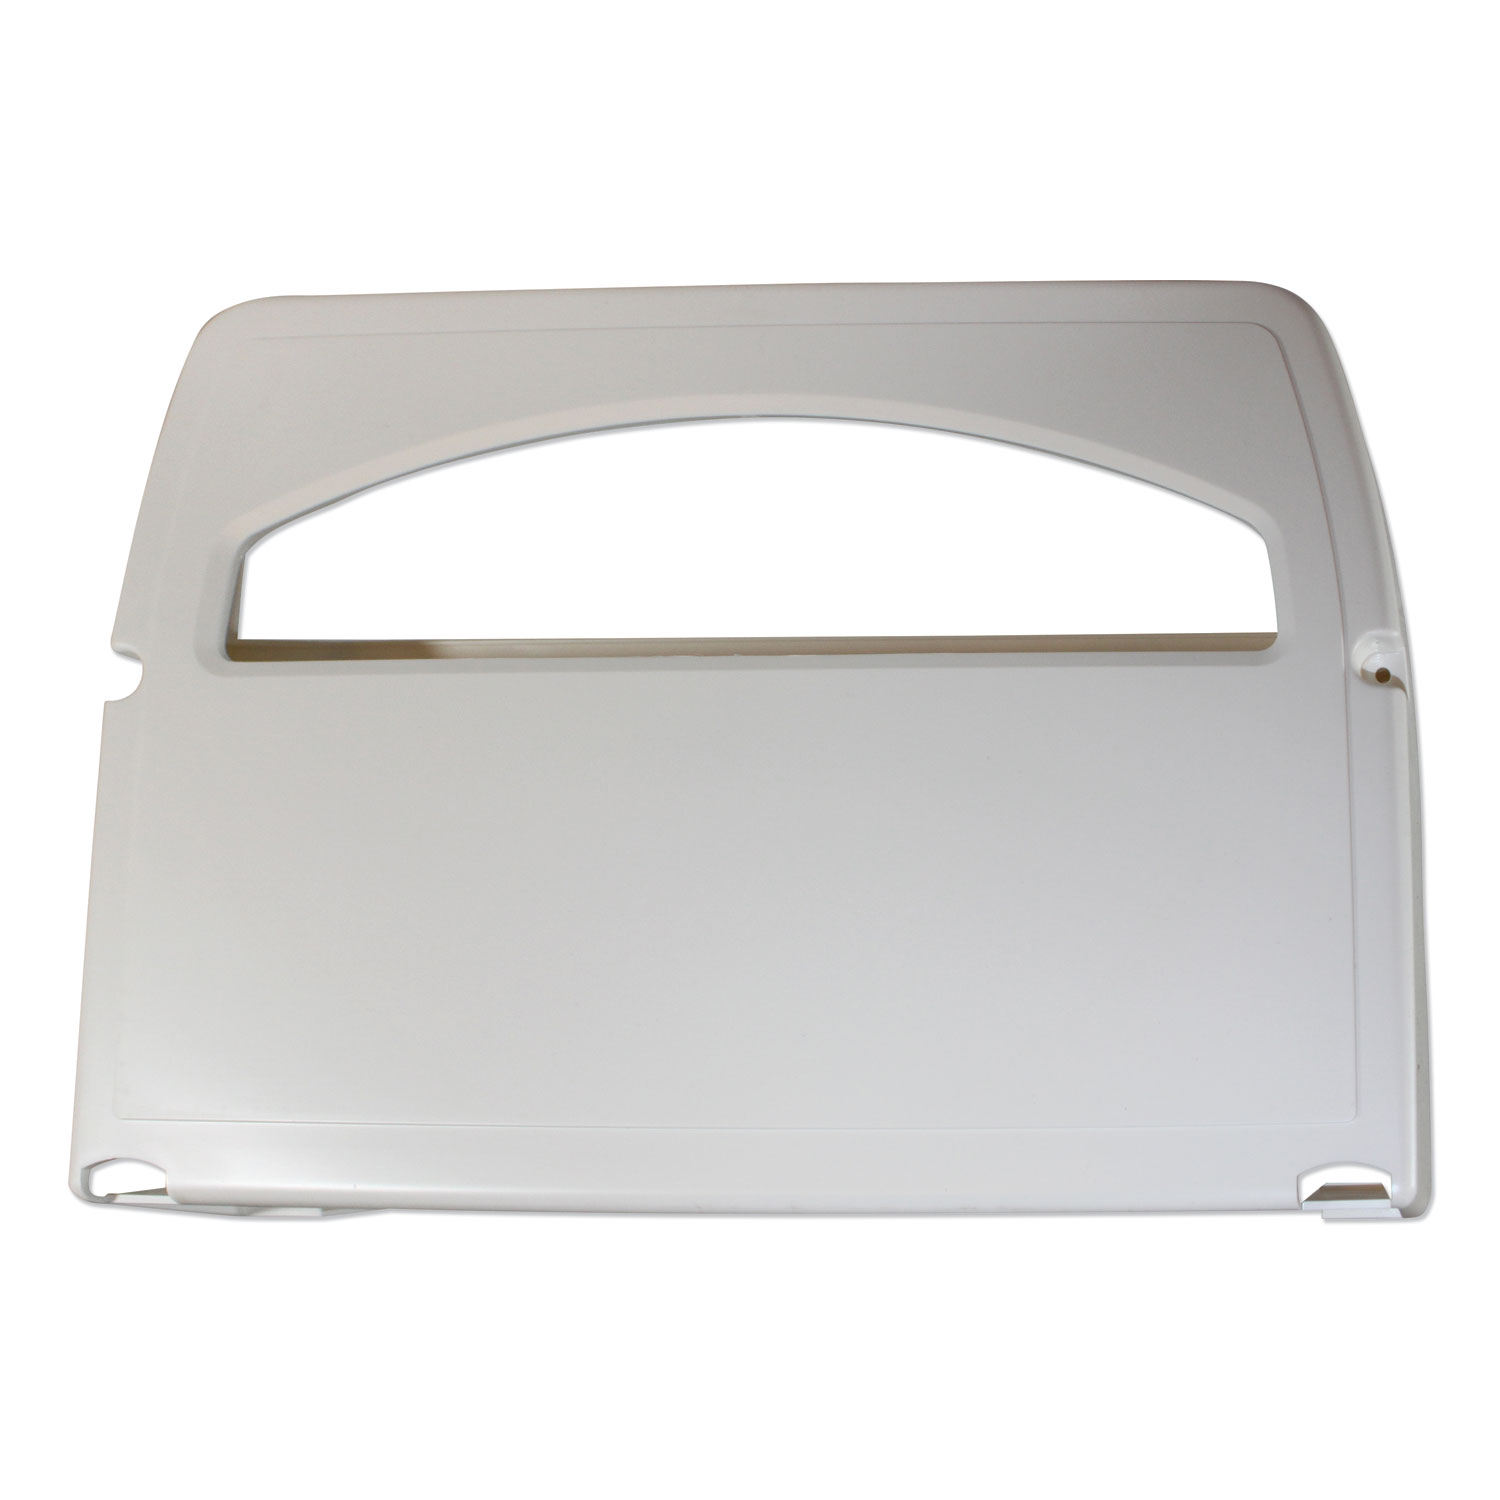  Impact IMP 1120 Toilet Seat Cover Dispenser, 16.4 x 3.05 x 11.9, White, 2/Carton (IMP1120CT) 